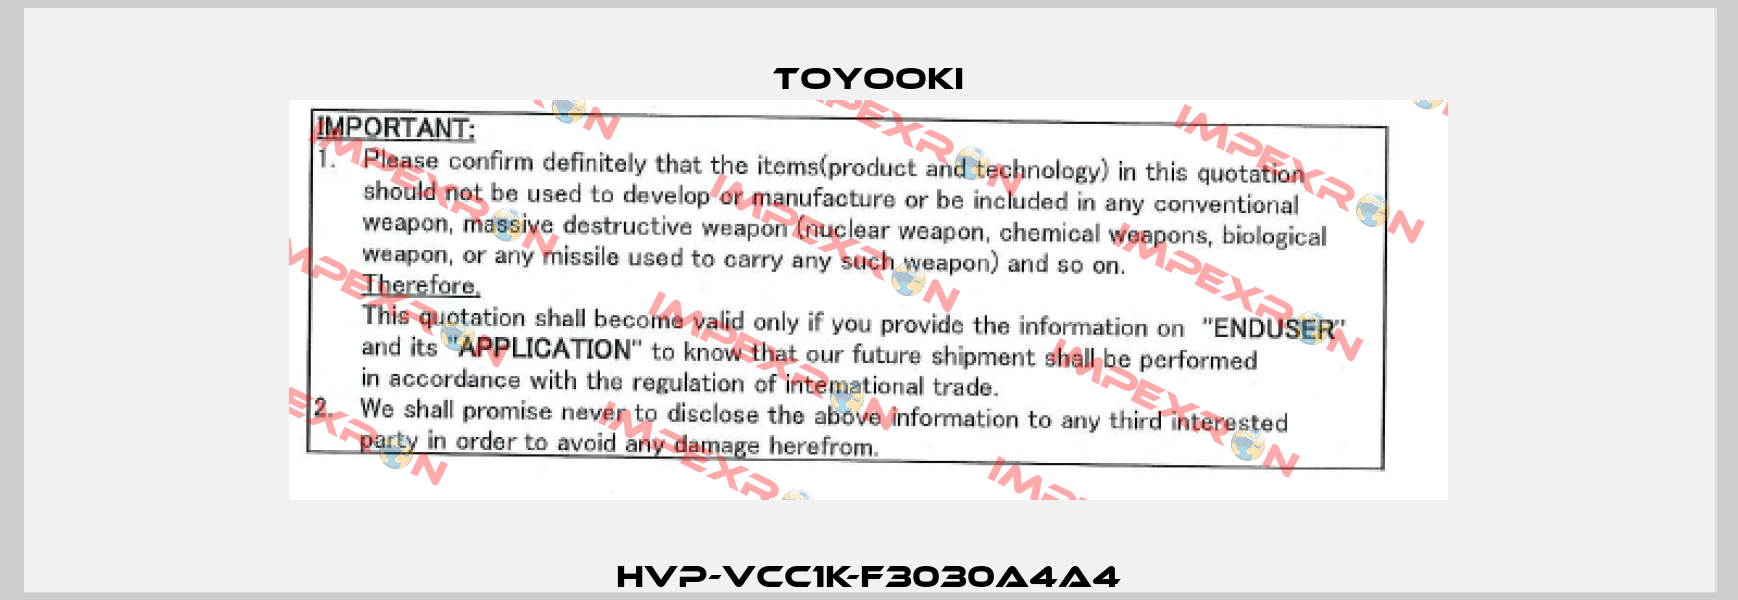 HVP-VCC1K-F3030A4A4 Toyooki